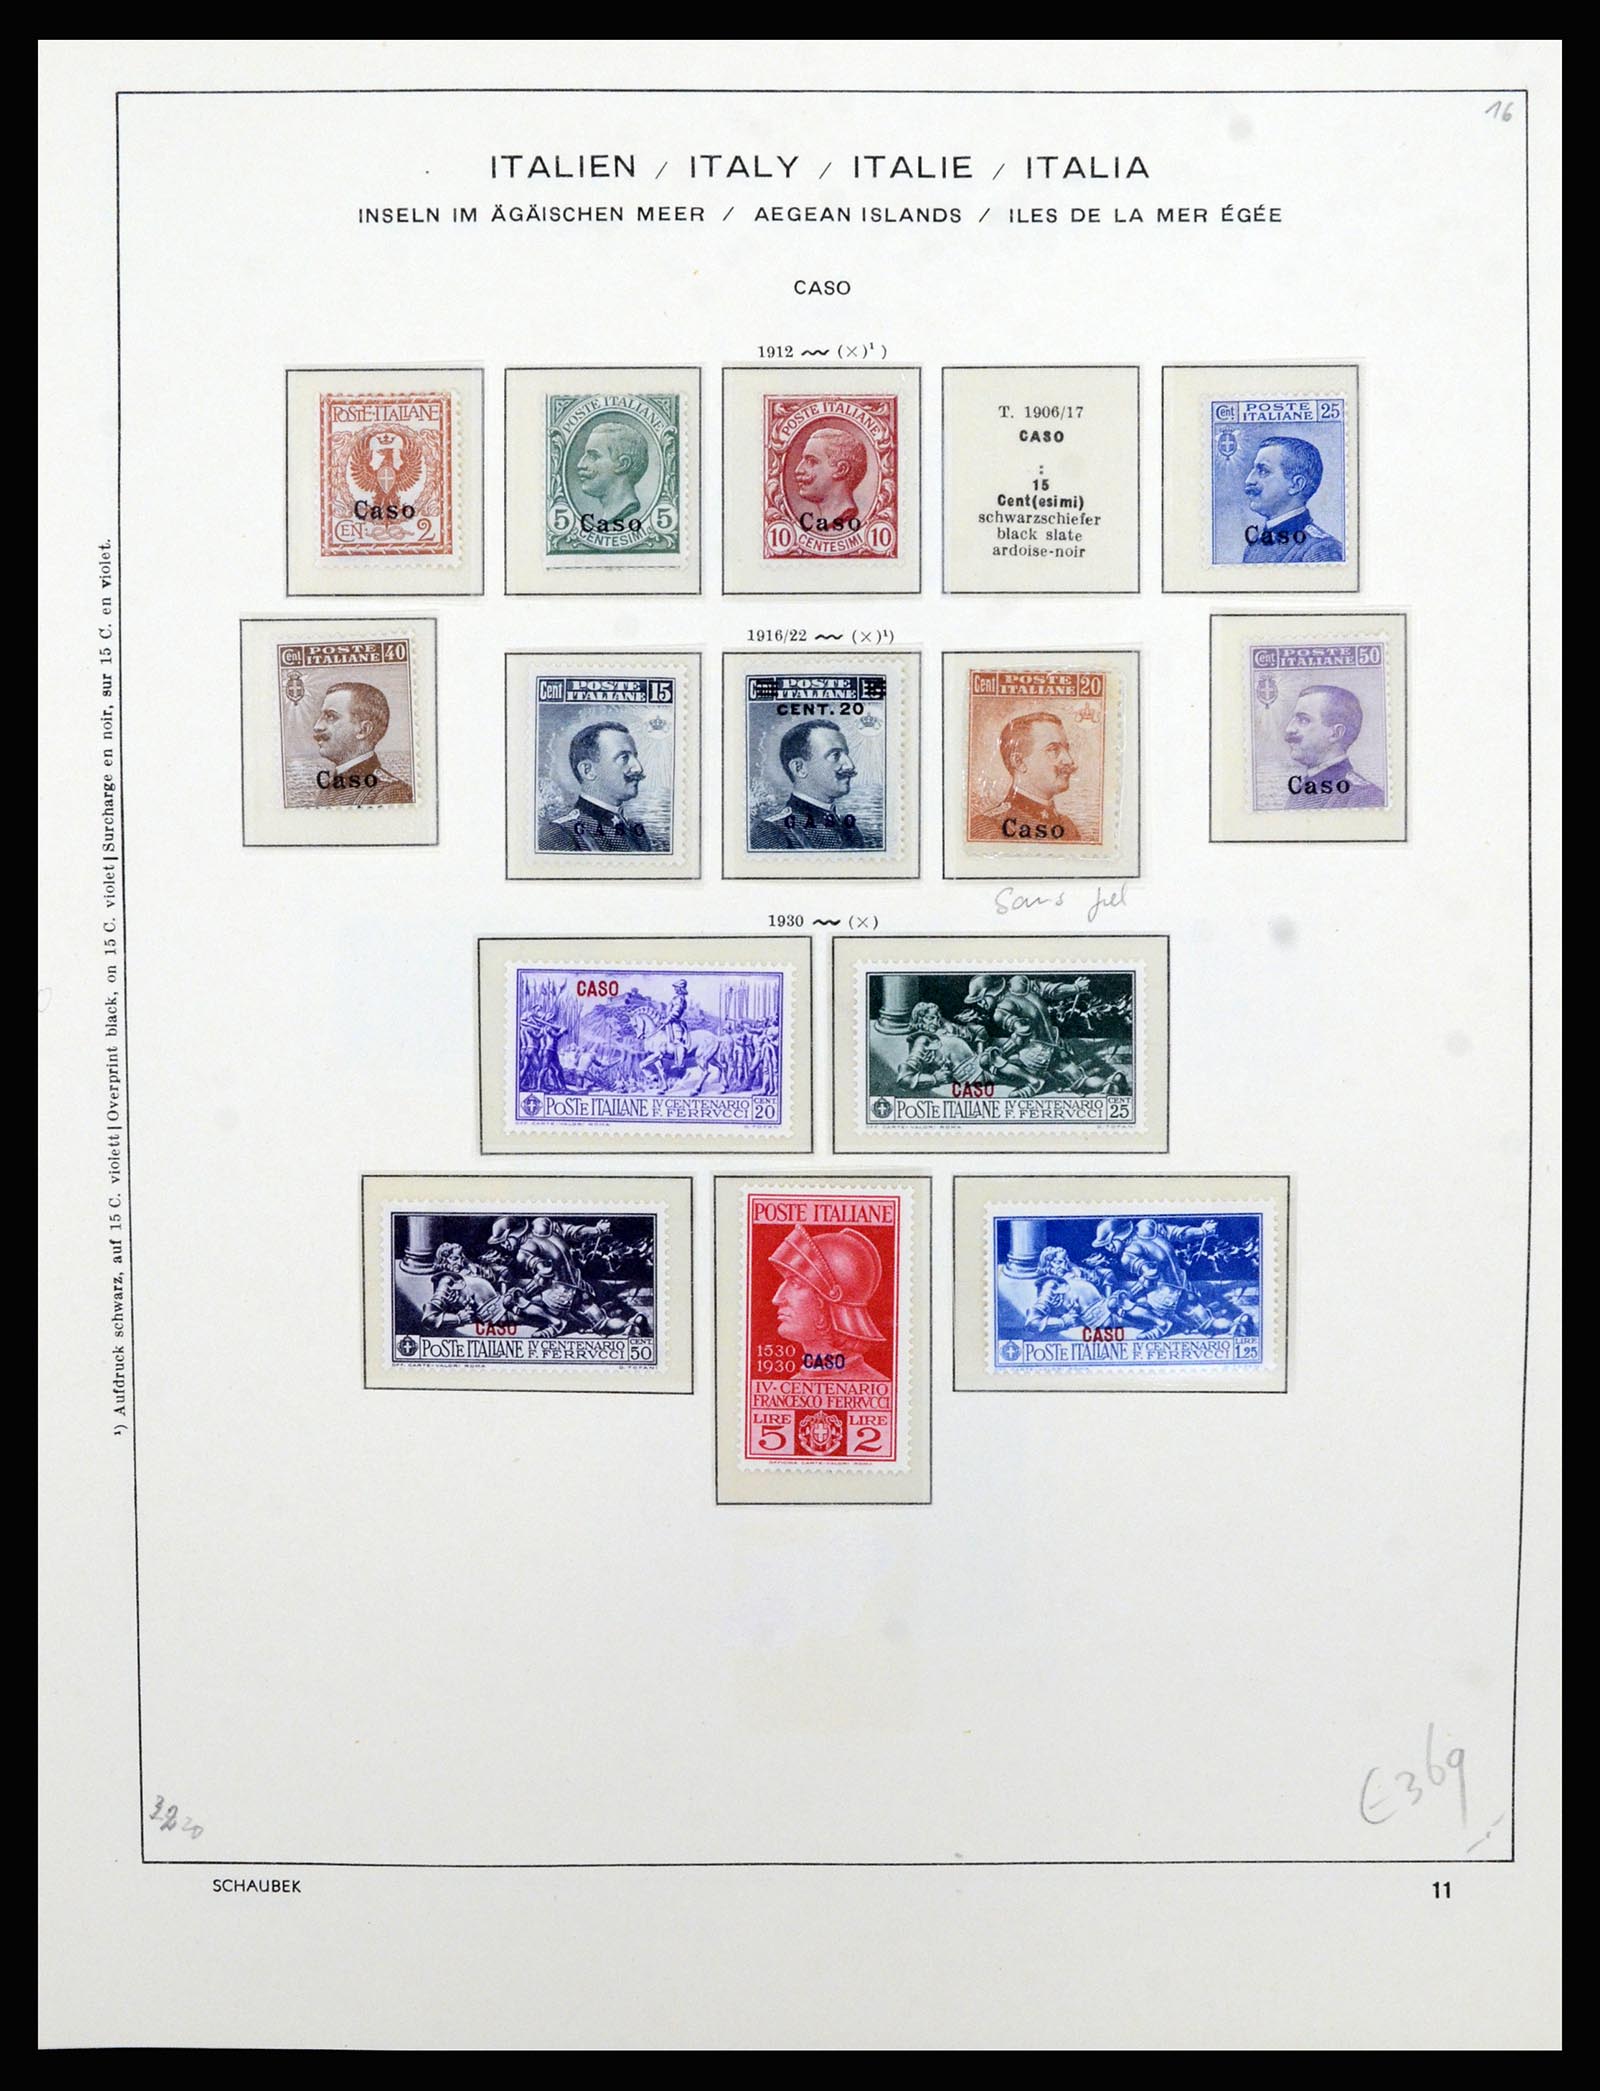 36577 037 - Stamp collection 36577 Italiaanse gebieden 1870-1940.